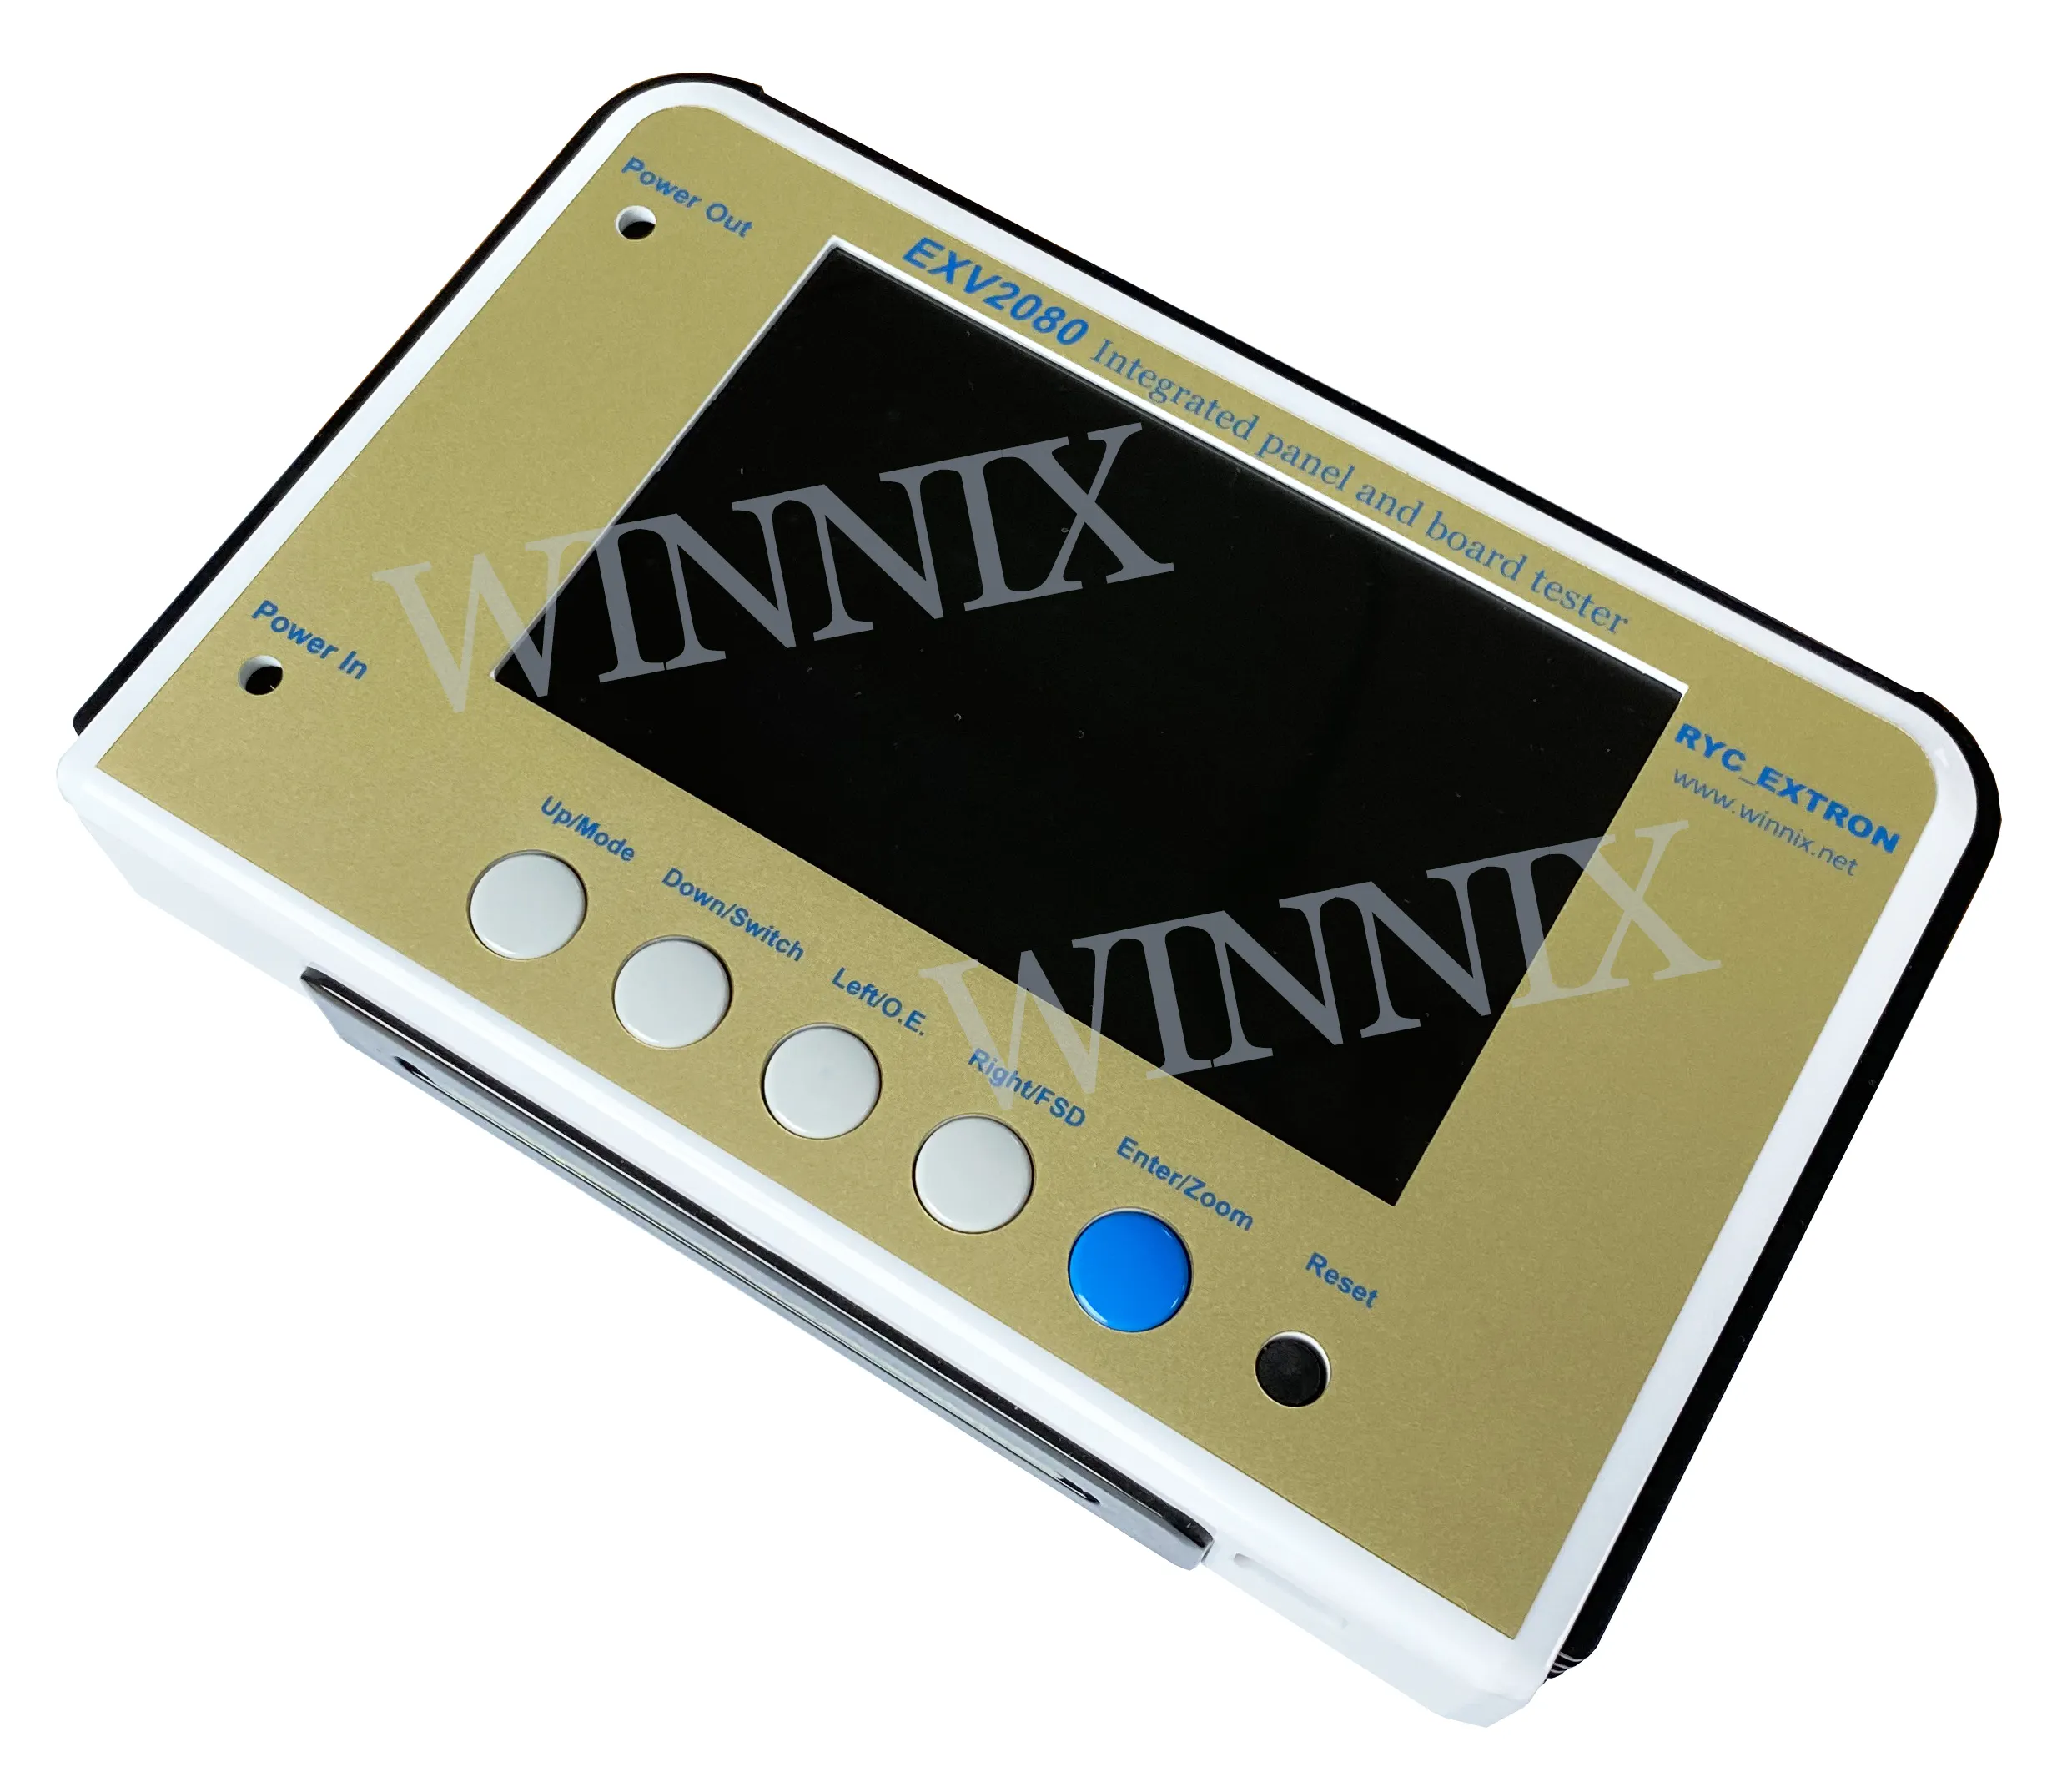 Probador de placa base de TV EXV 2080 LCD/LED, medición simultánea de dos señales LVDS de alta definición